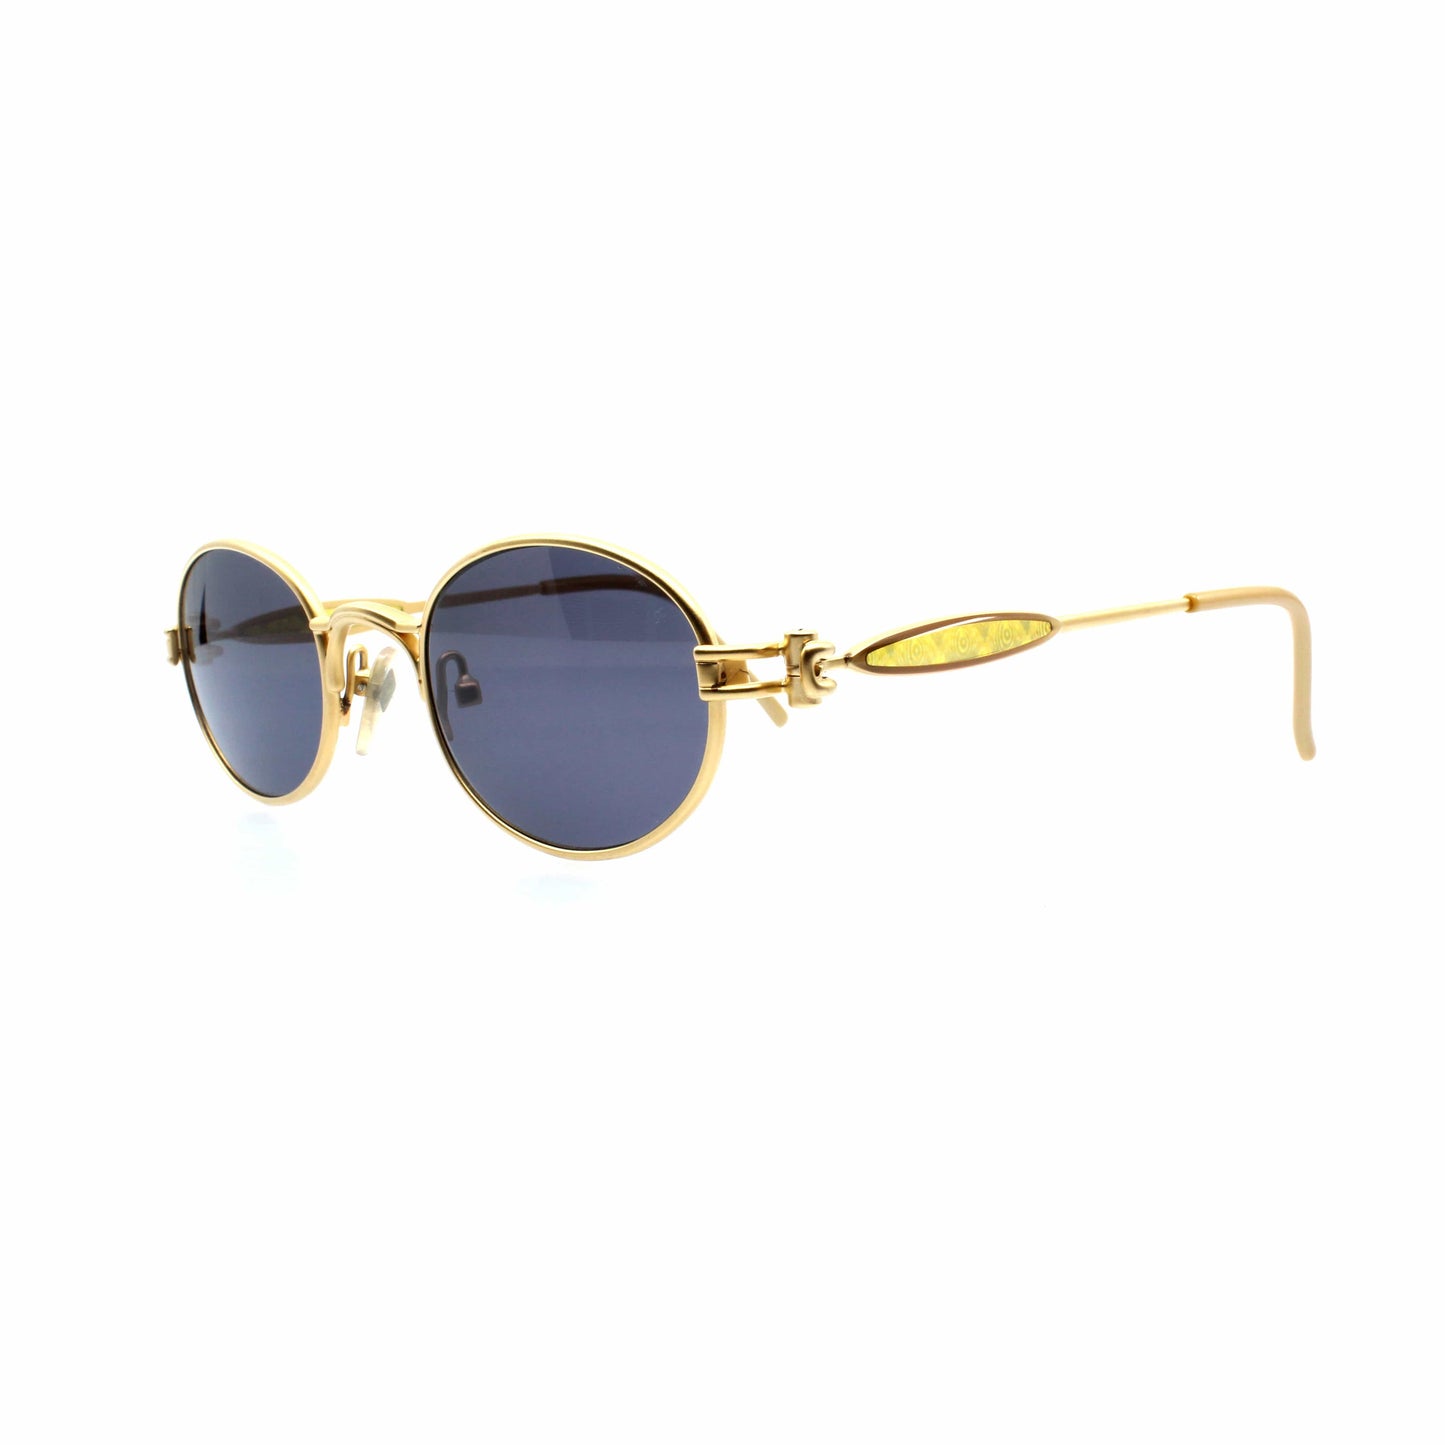 Gold Vintage Jean Paul Gaultier 56-7113 Sunglasses RSTKD Vintage